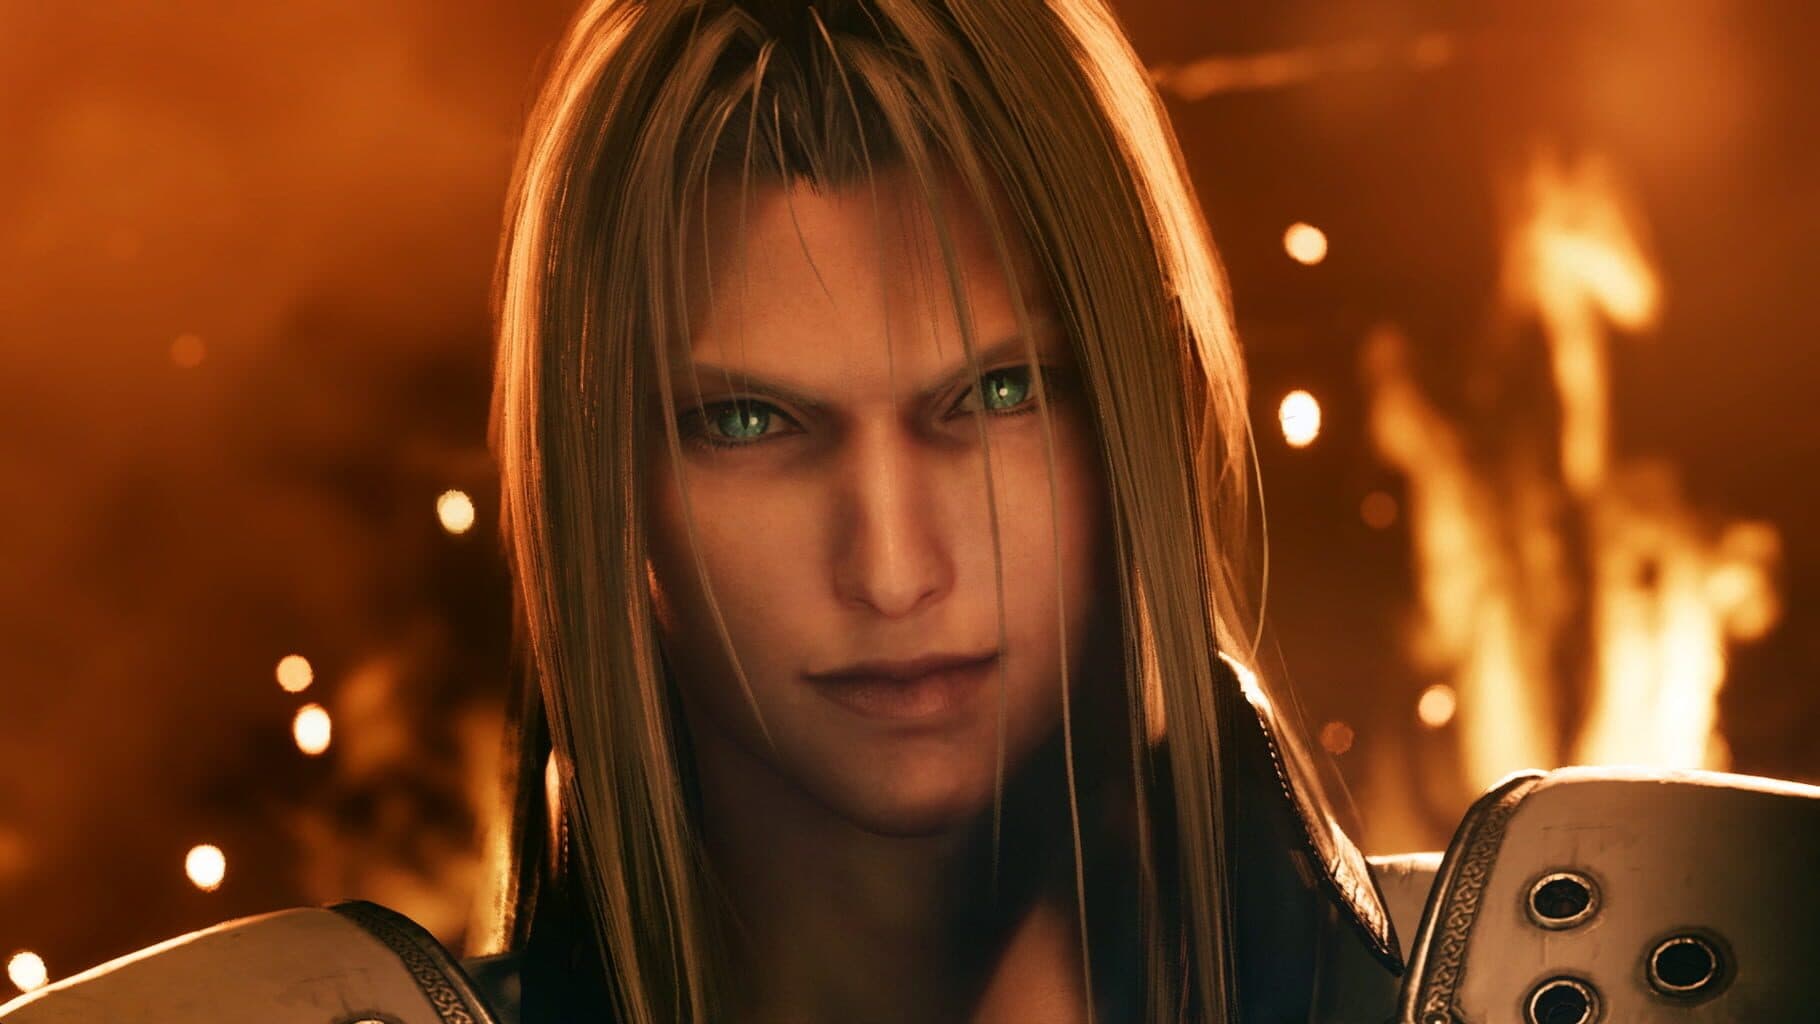 Final Fantasy VII Remake Image